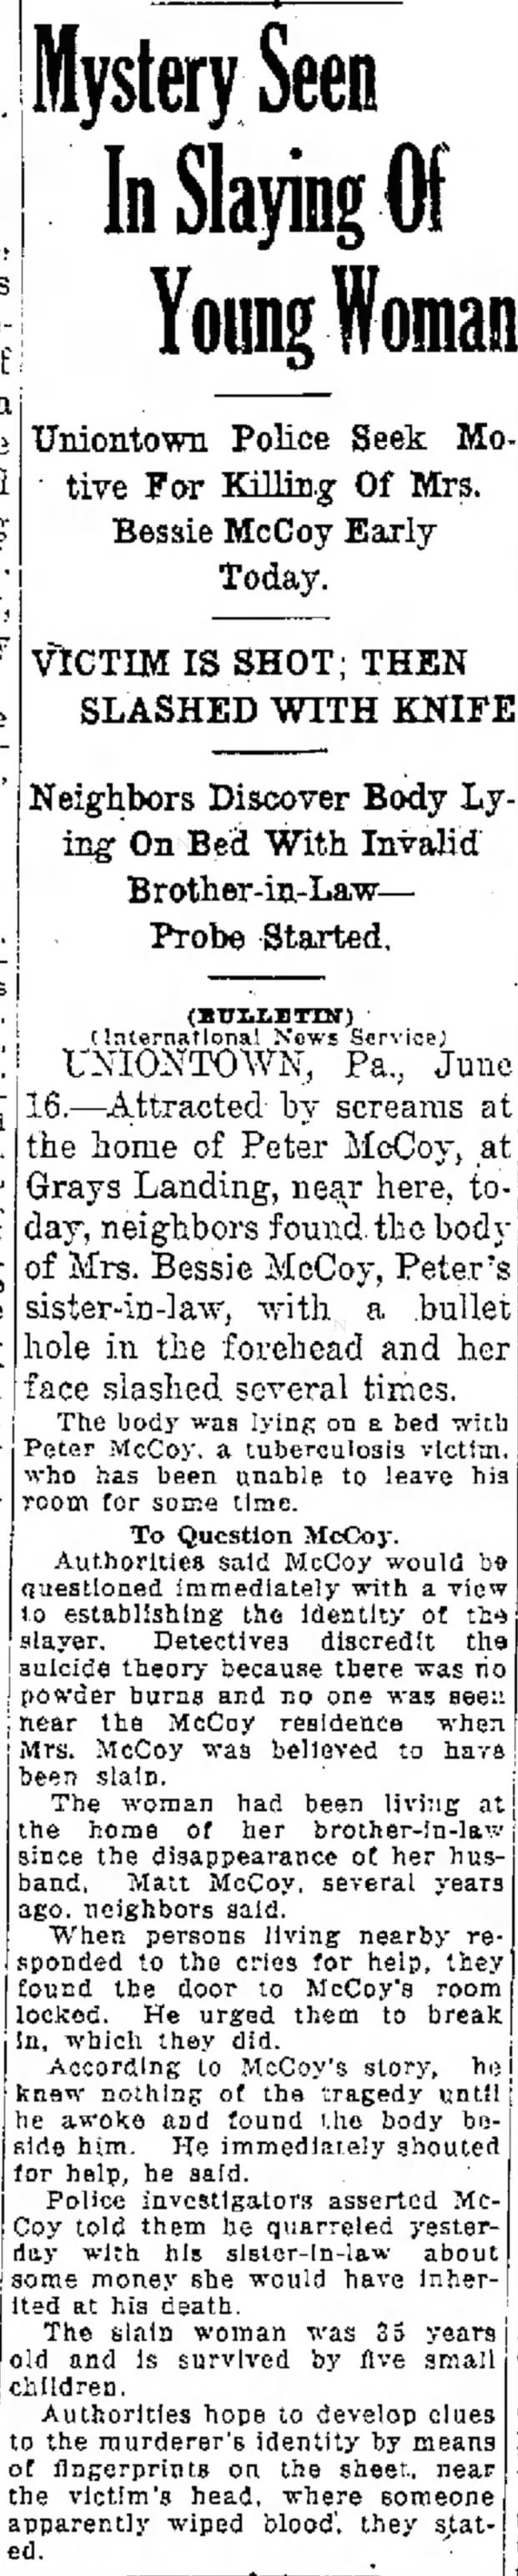 Death of Bessie McCoy